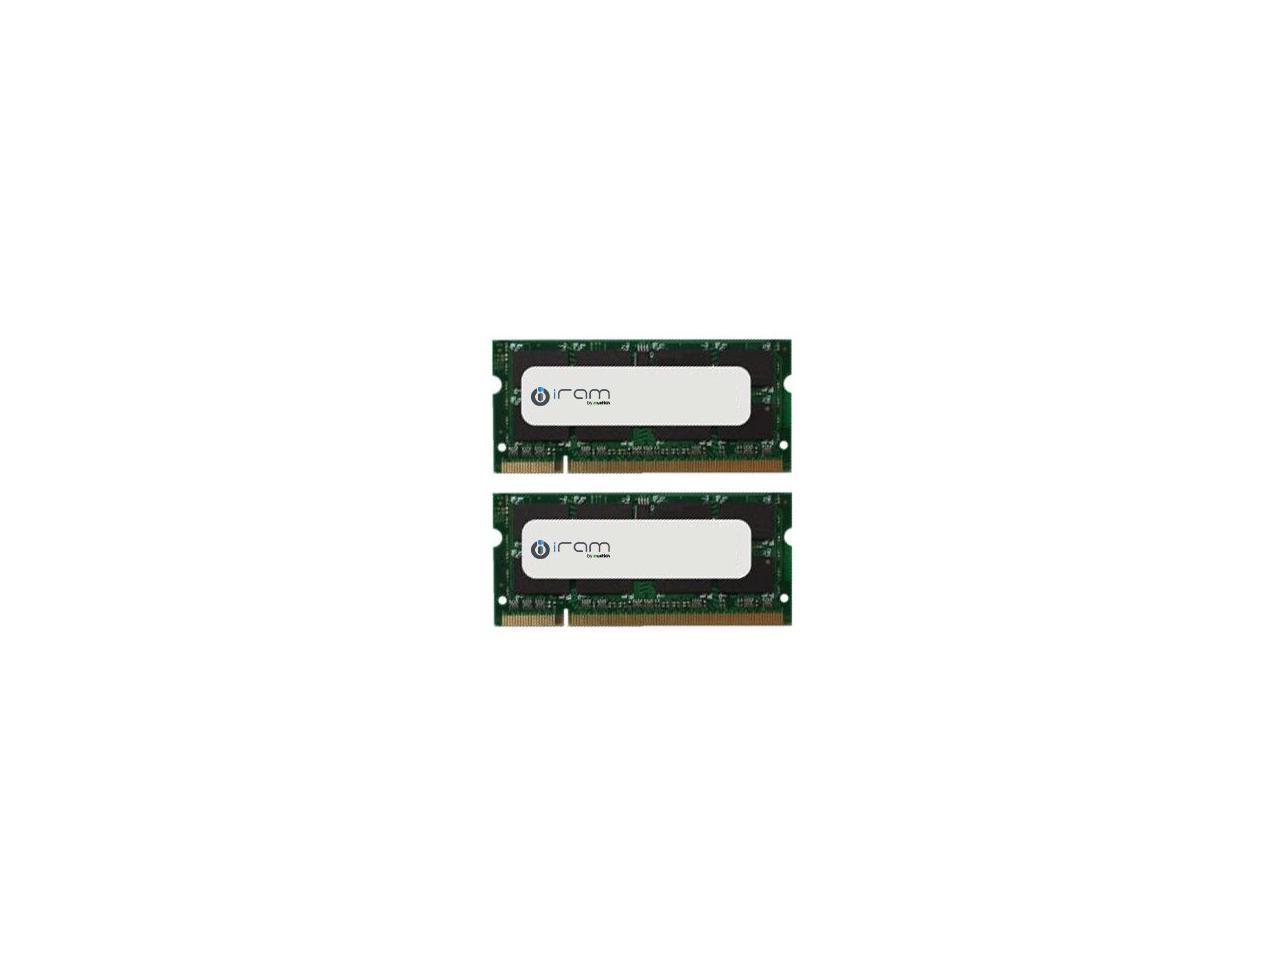 Mushkin Enhanced 16GB (2x8GB) iram DDR3 PC3-8500 1066MHz 204-Pin Memory for Apple Model MAR3S1067T8G28X2